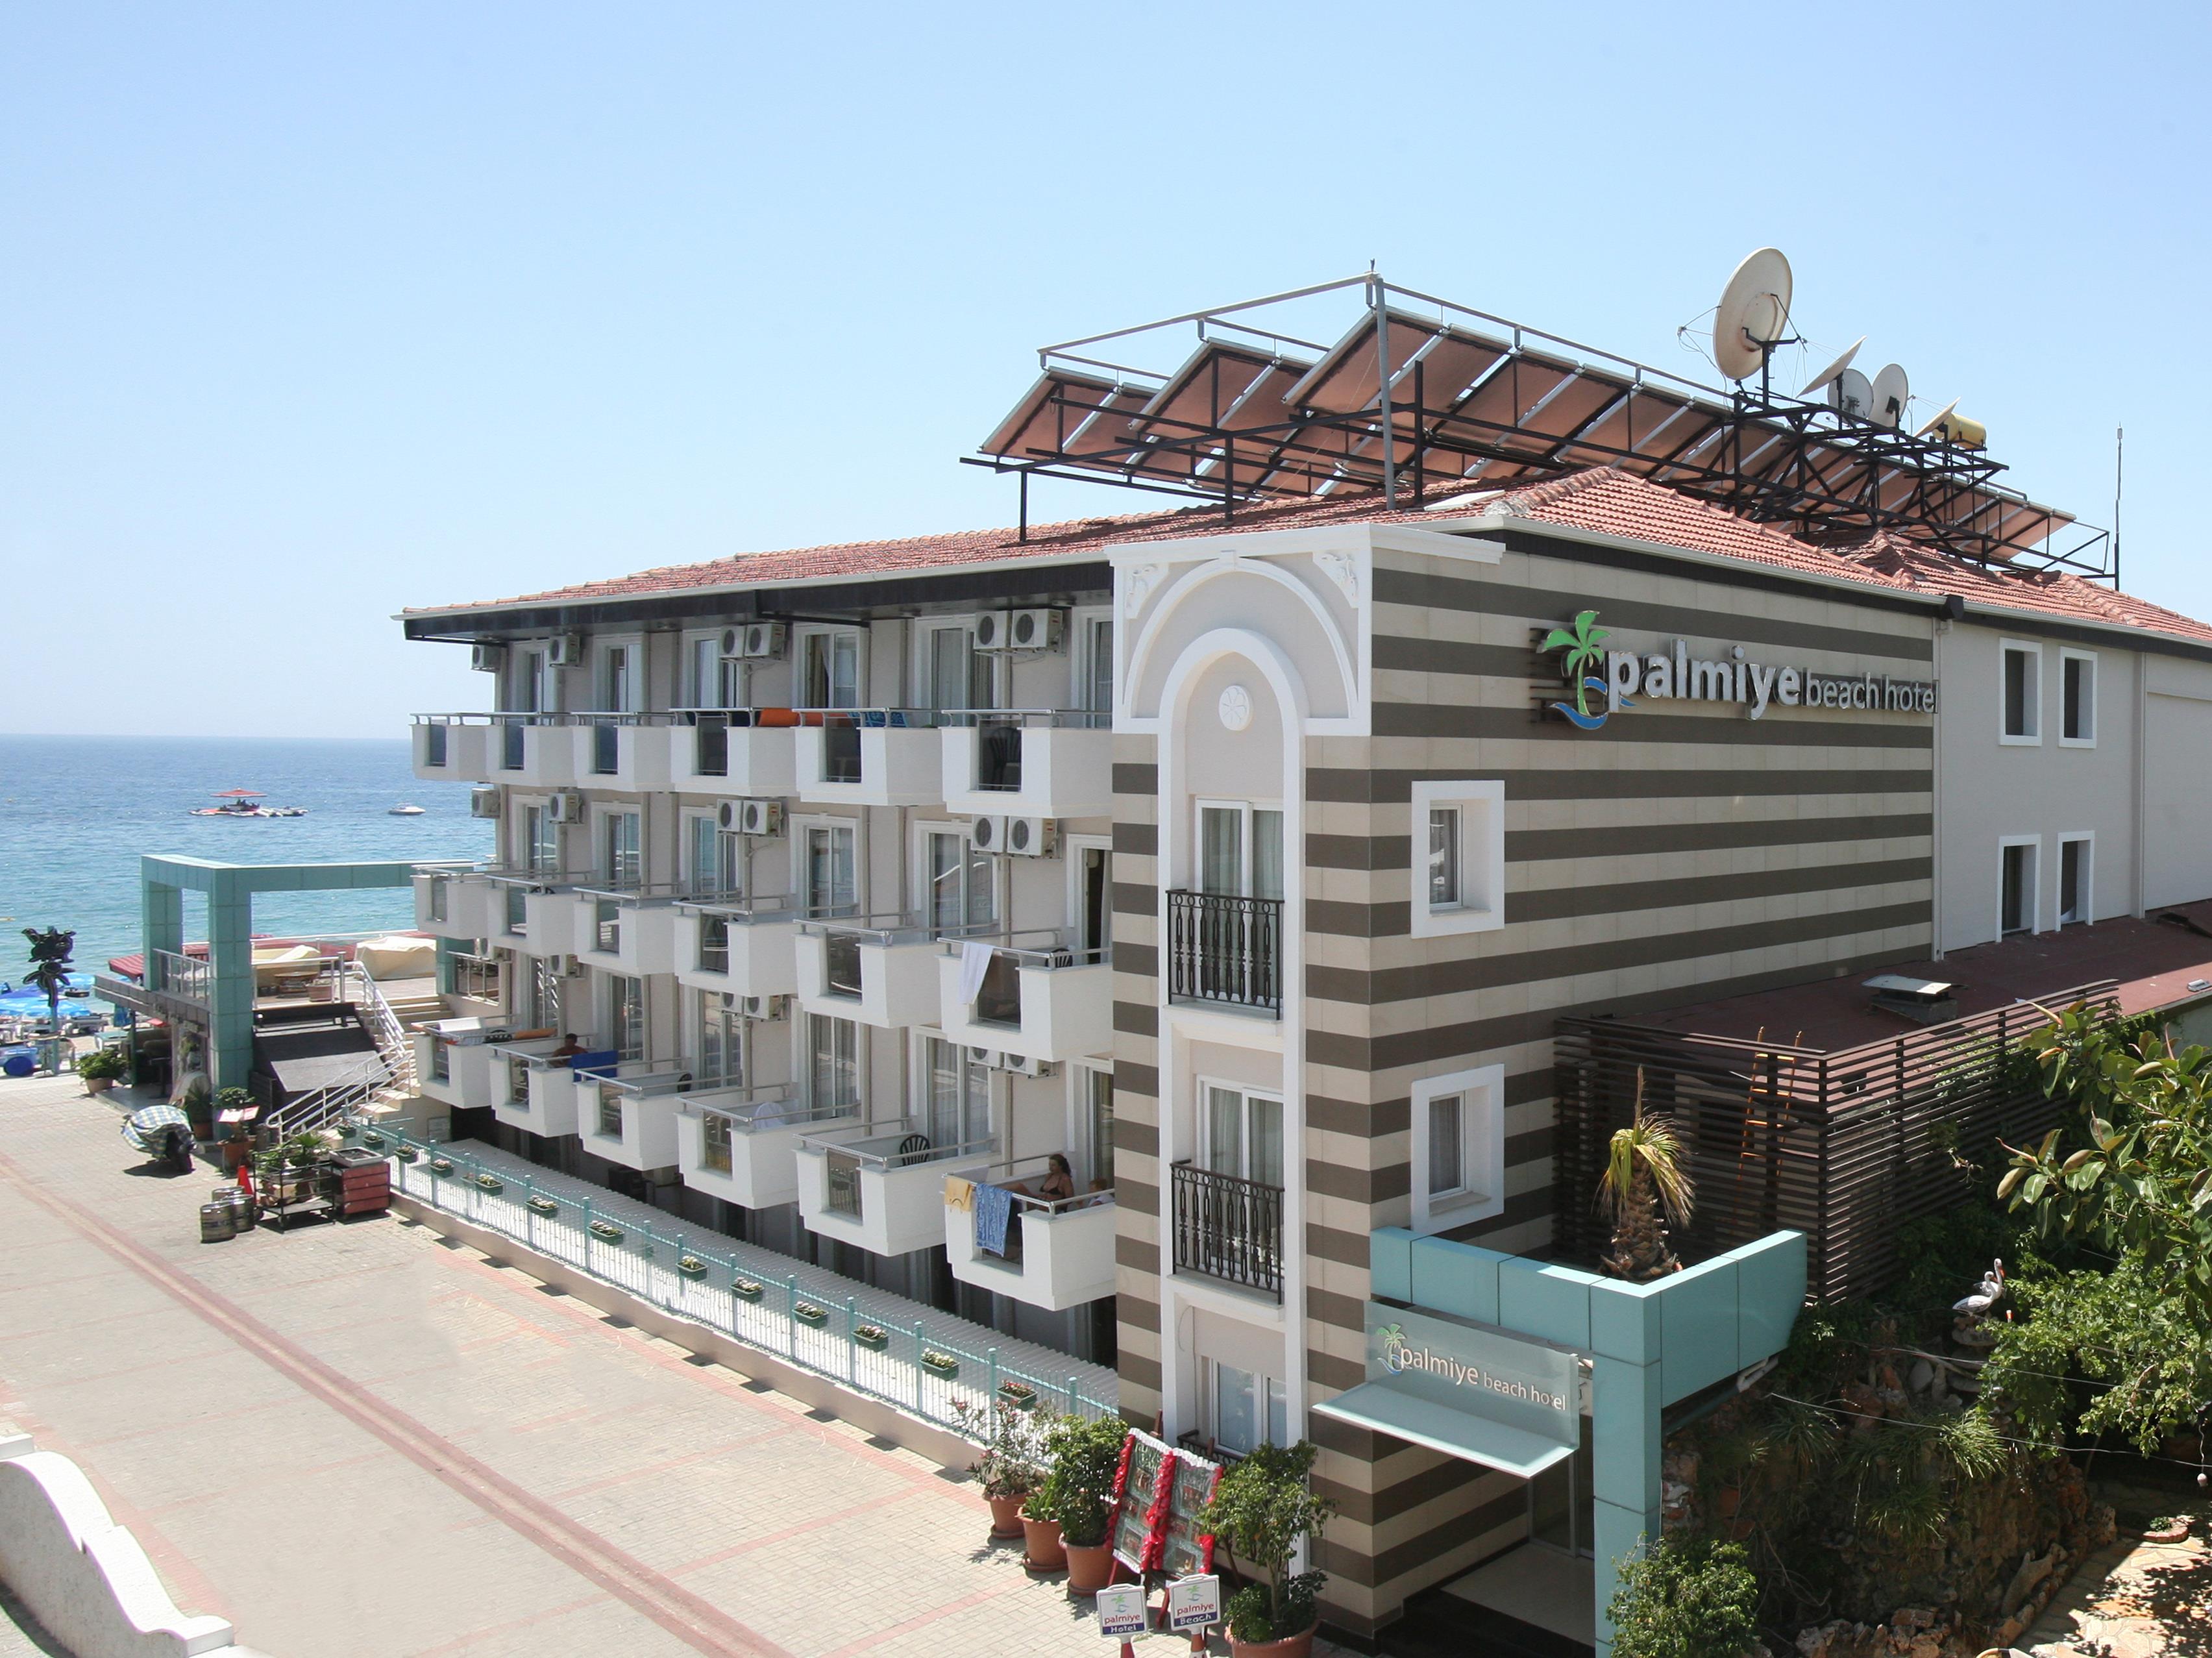 Palmiye Beach Hotel